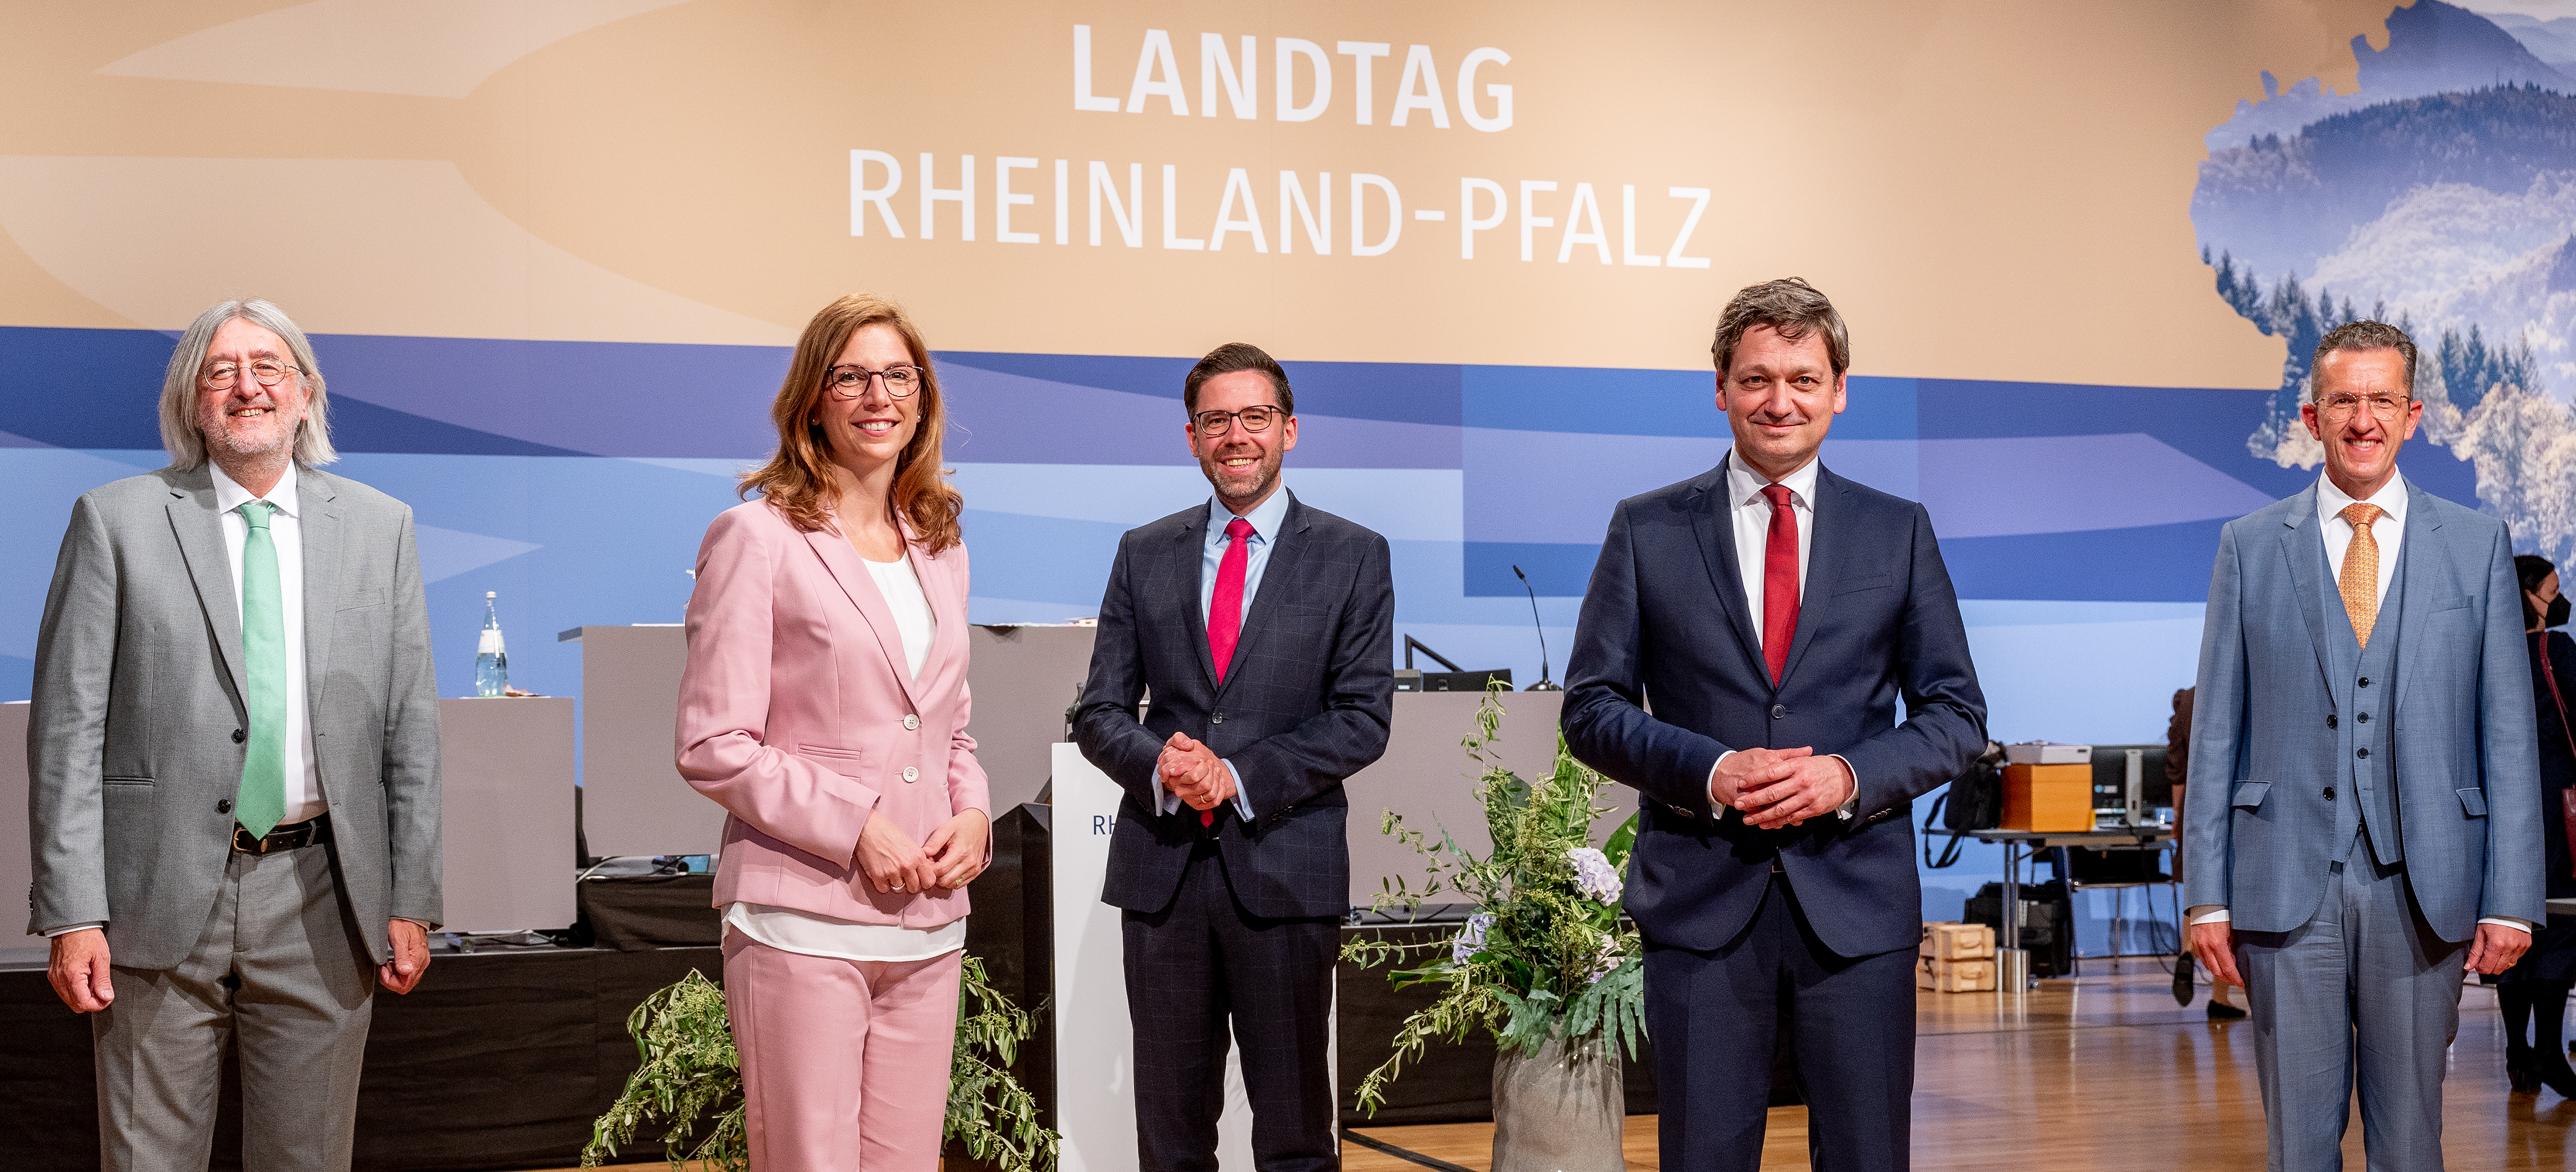 Die Fraktionsvorsitzenden stehen auf der Rednerflächen vor dem Logo des Landtags Rheinland-Pfalz.